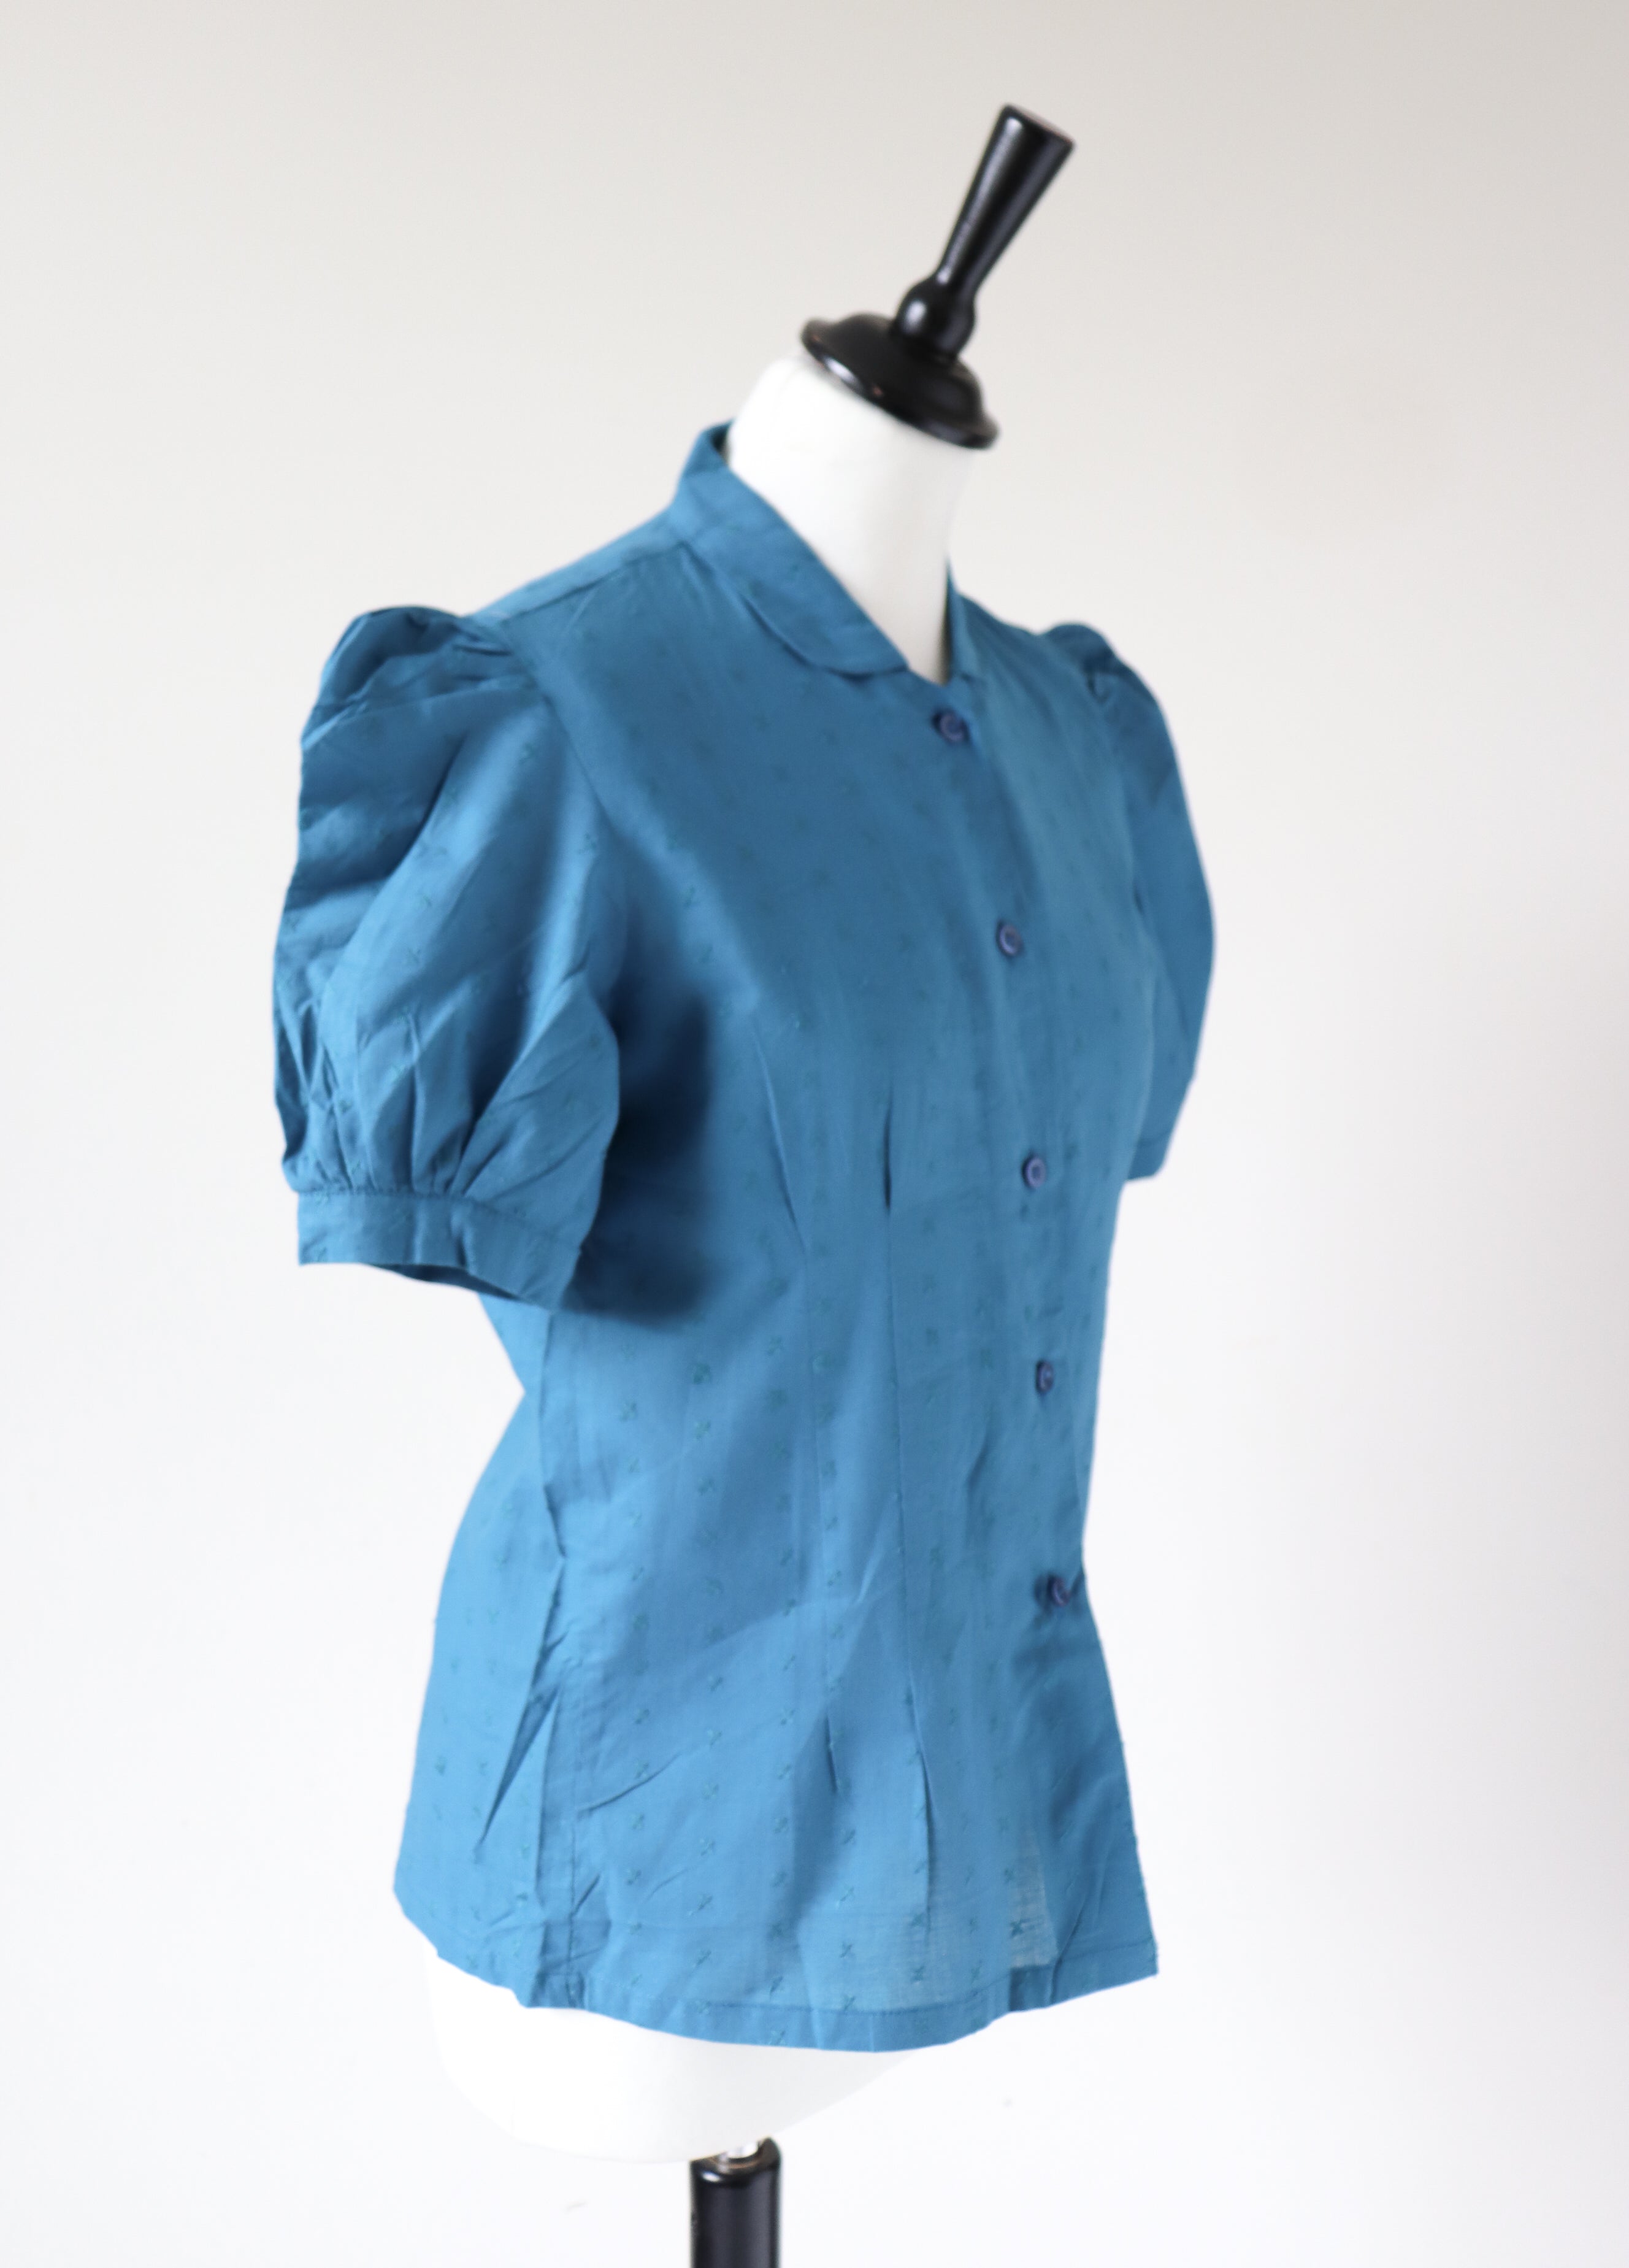 Vintage Cotton Blouse - Indian Cotton 1980s Deadstock - Blue - Fit S / UK 10